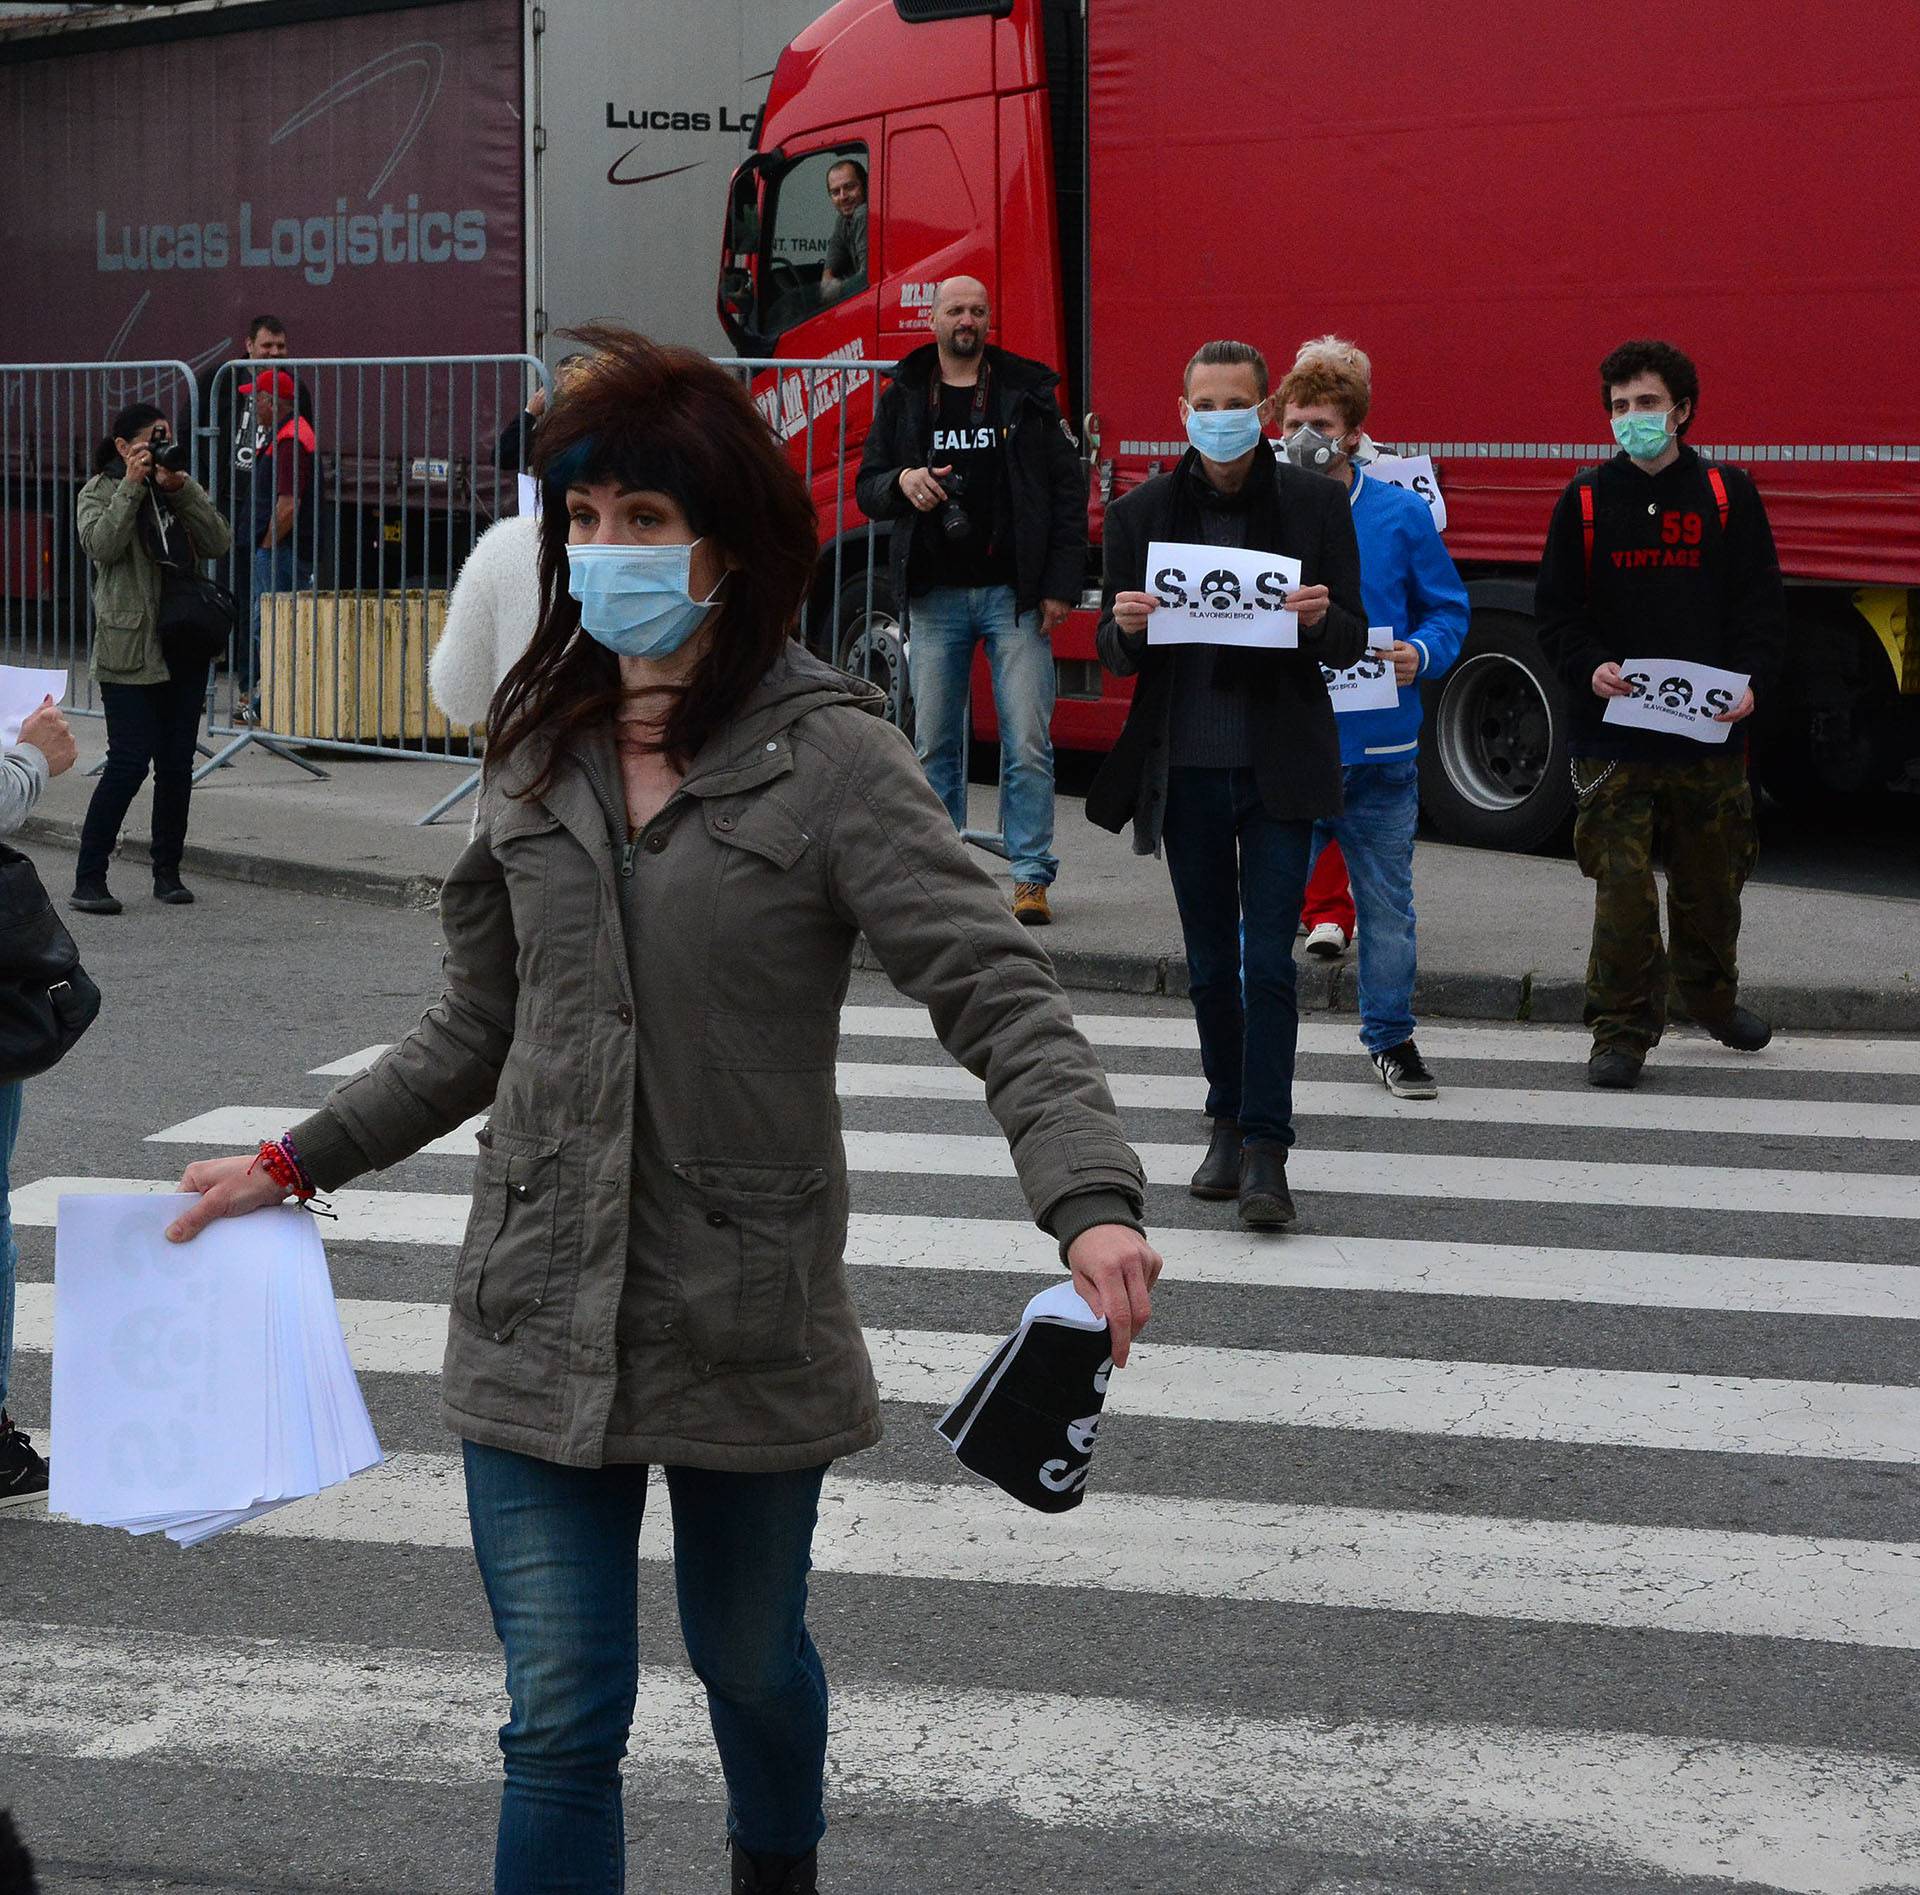 Obustavili su promet: Prosvjed protiv zagađenja zraka u Brodu